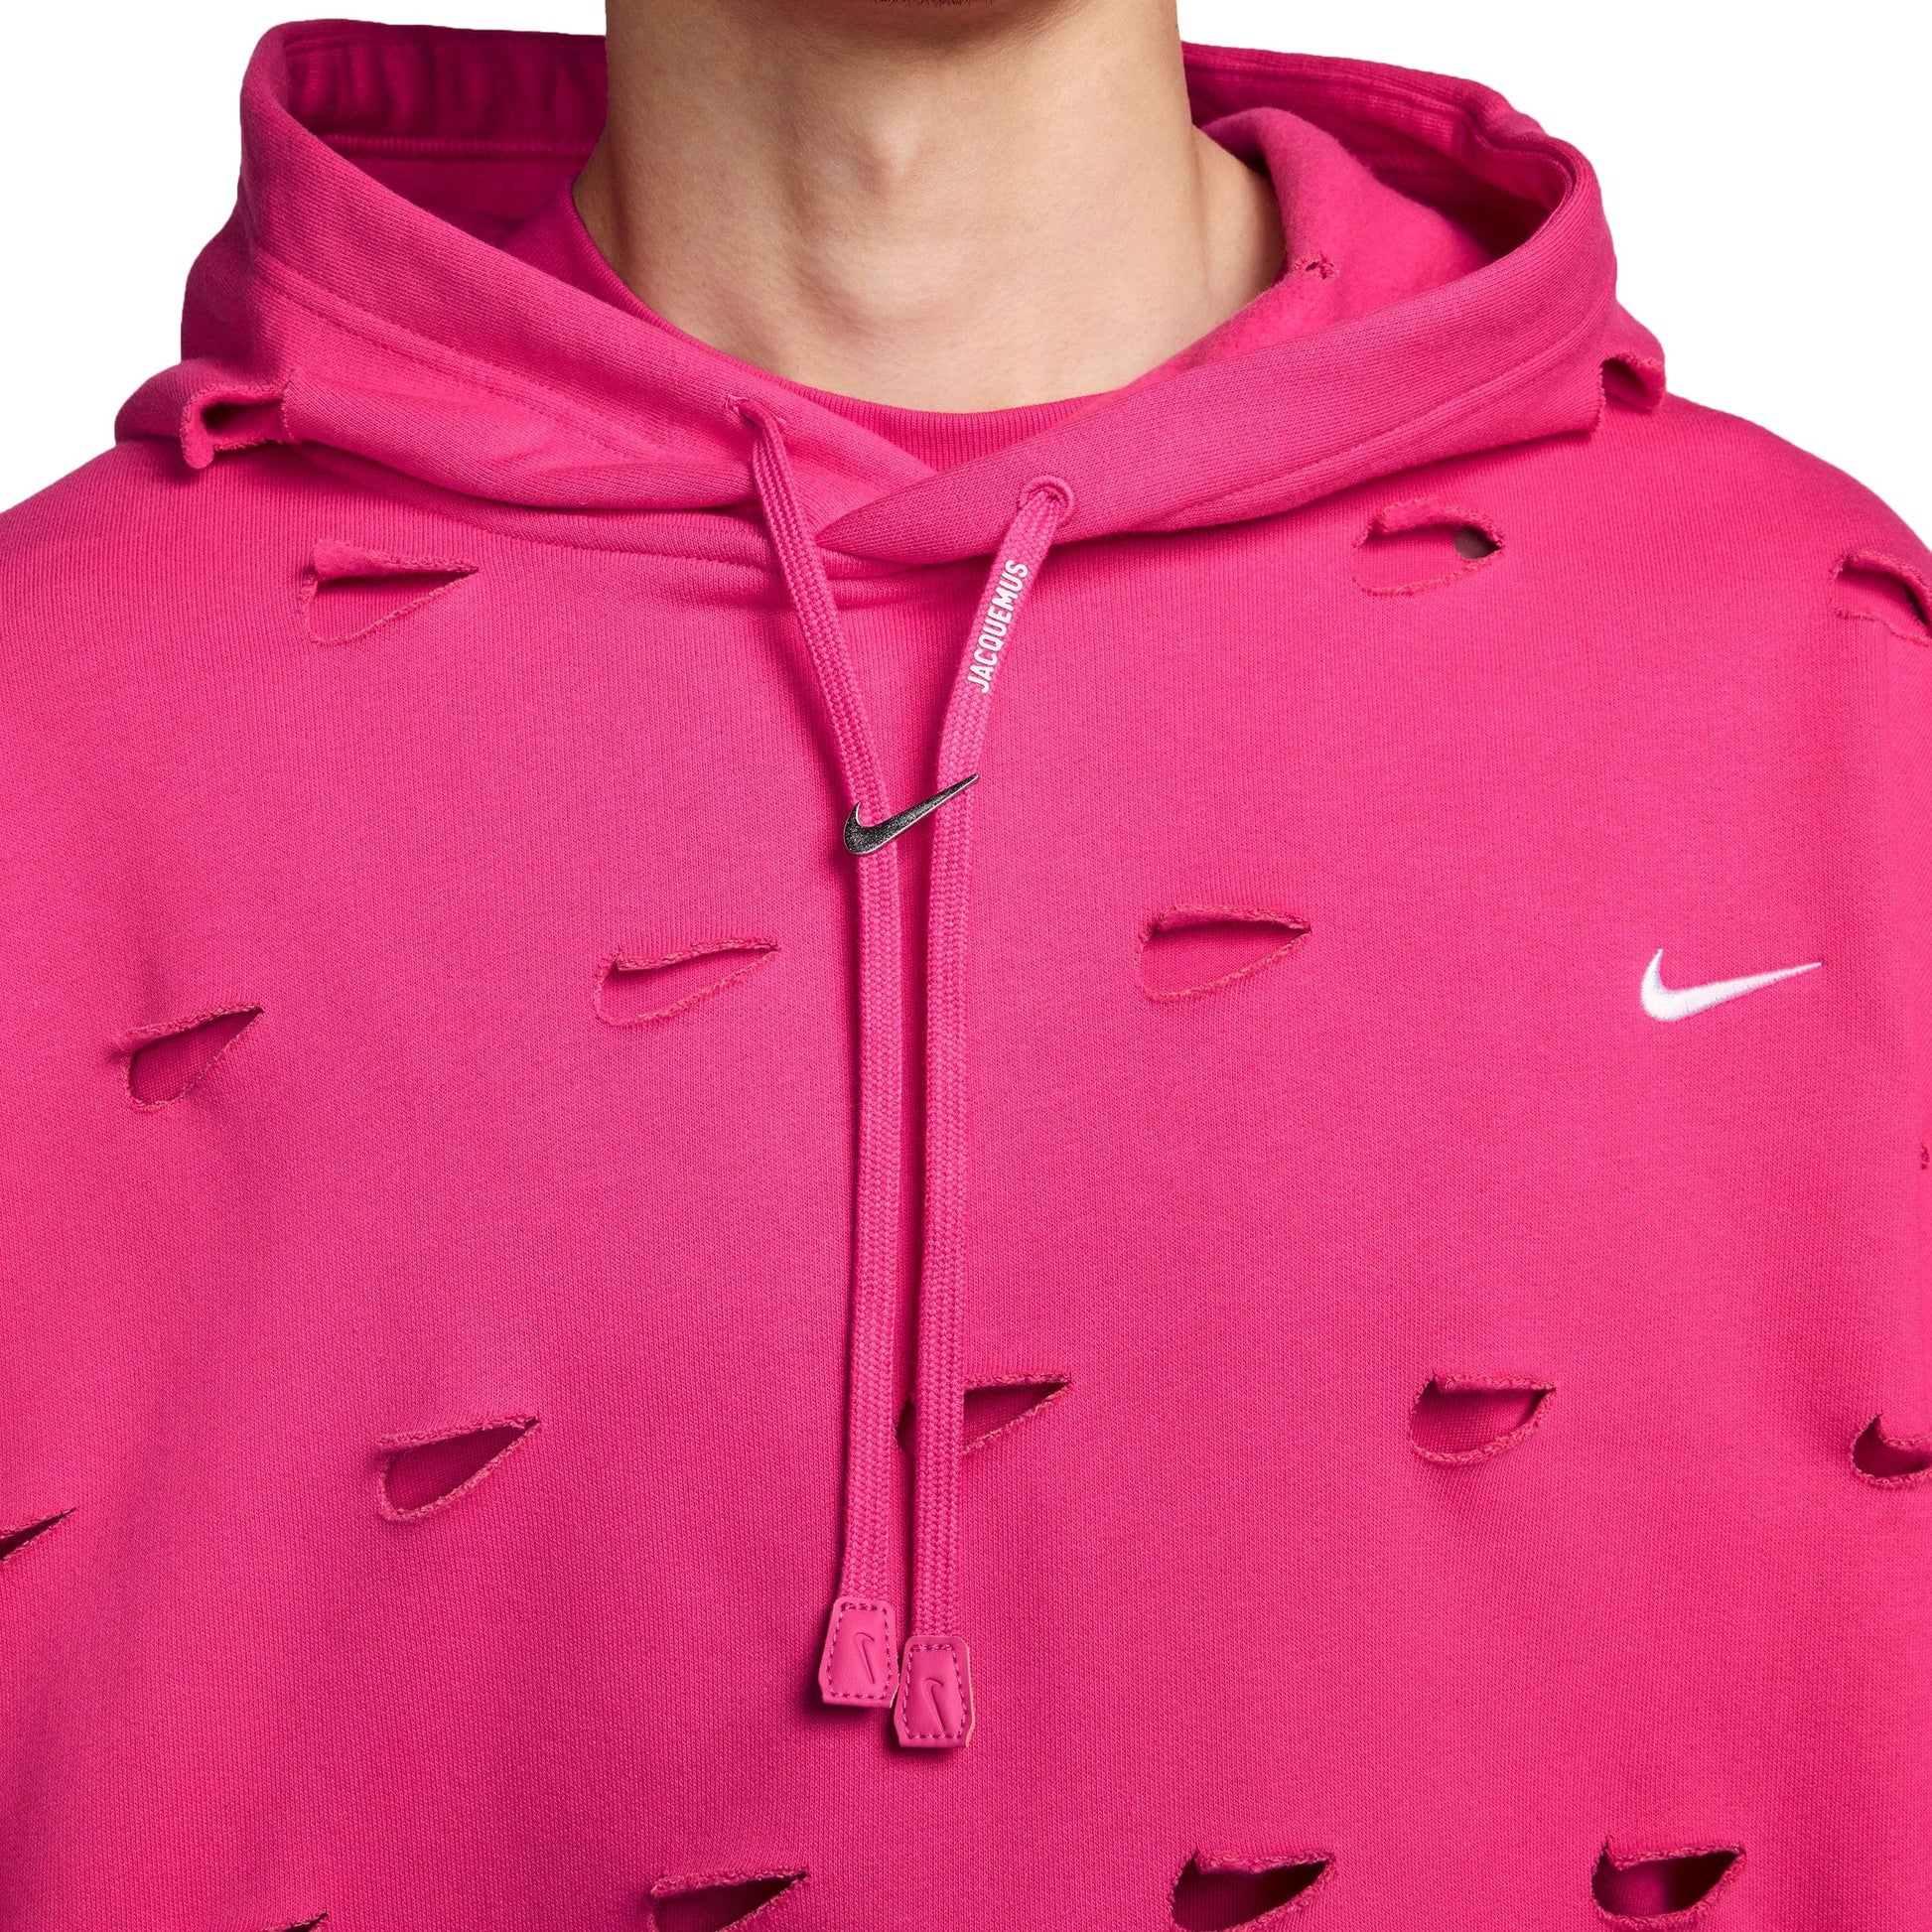 Nike Hoodies & Sweatshirts X JACQUEMUS SWOOSH HOODIE